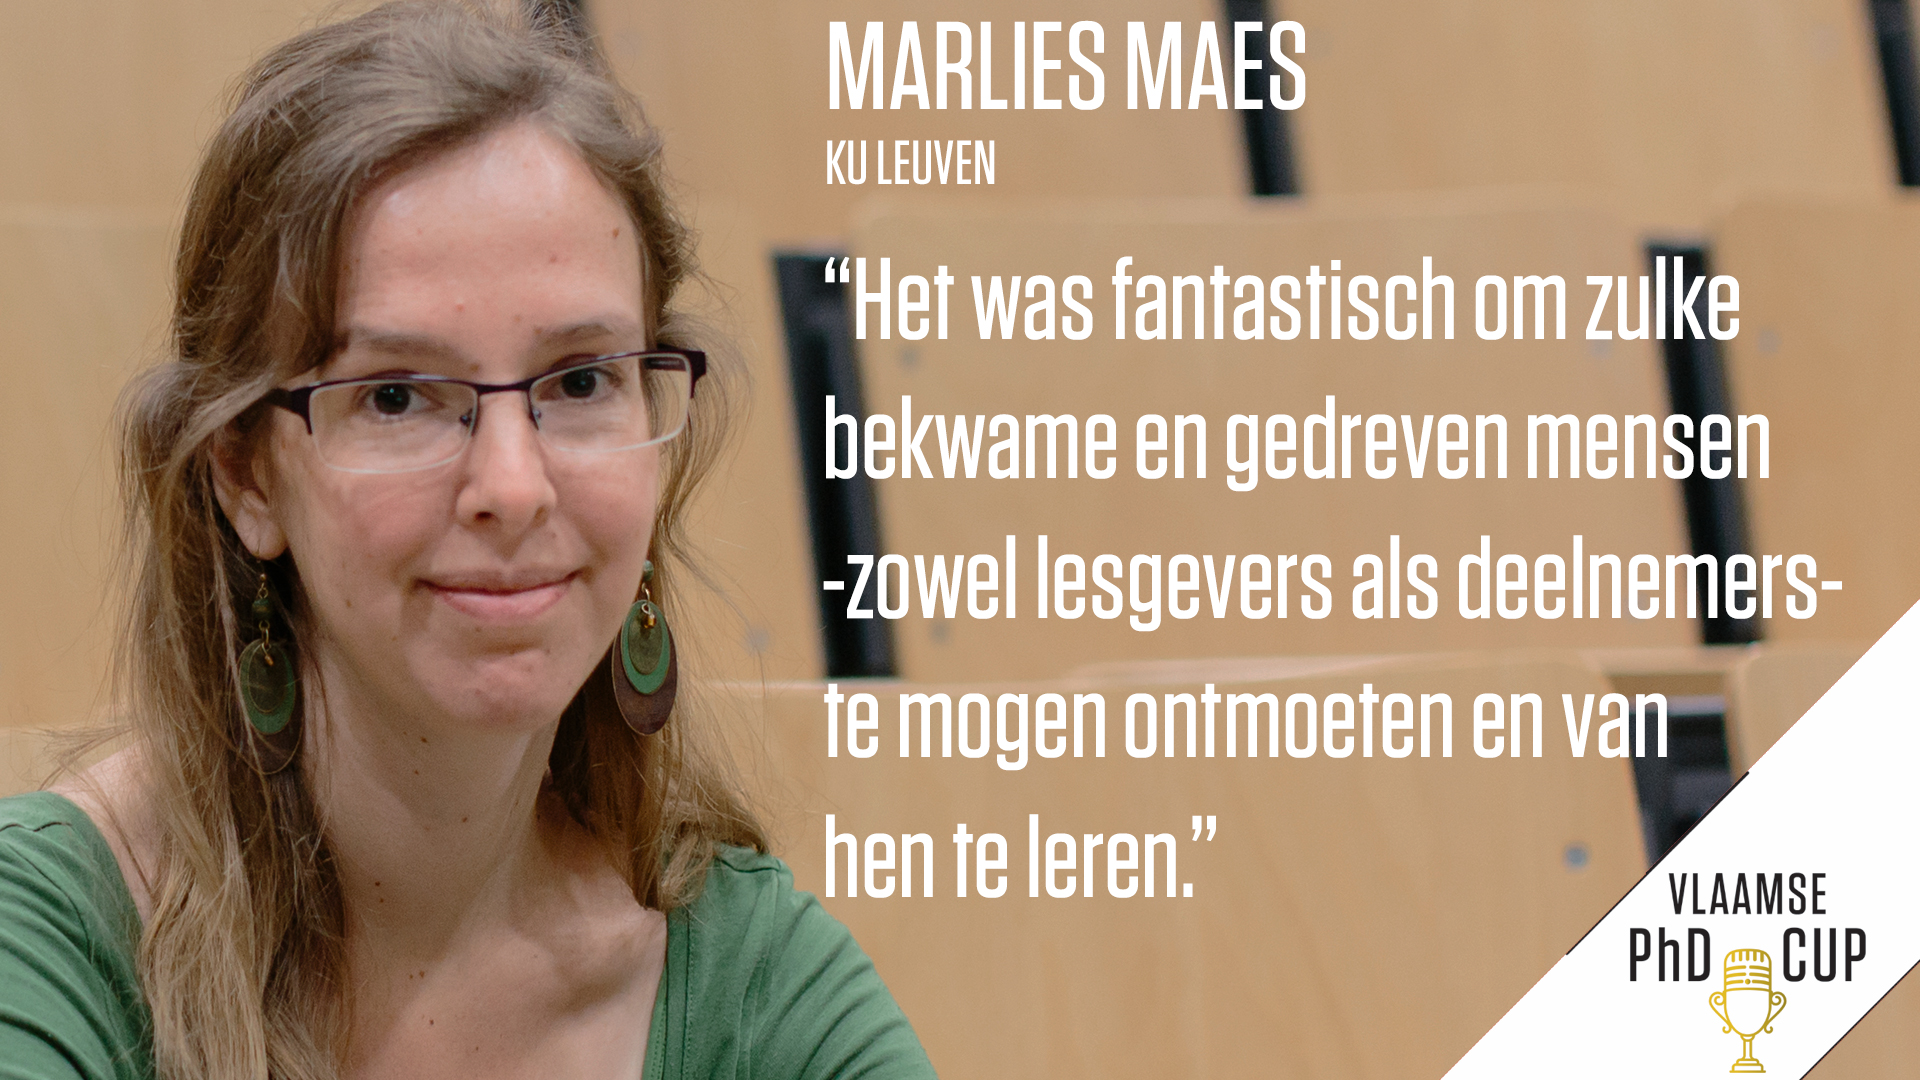 Marlies Maes